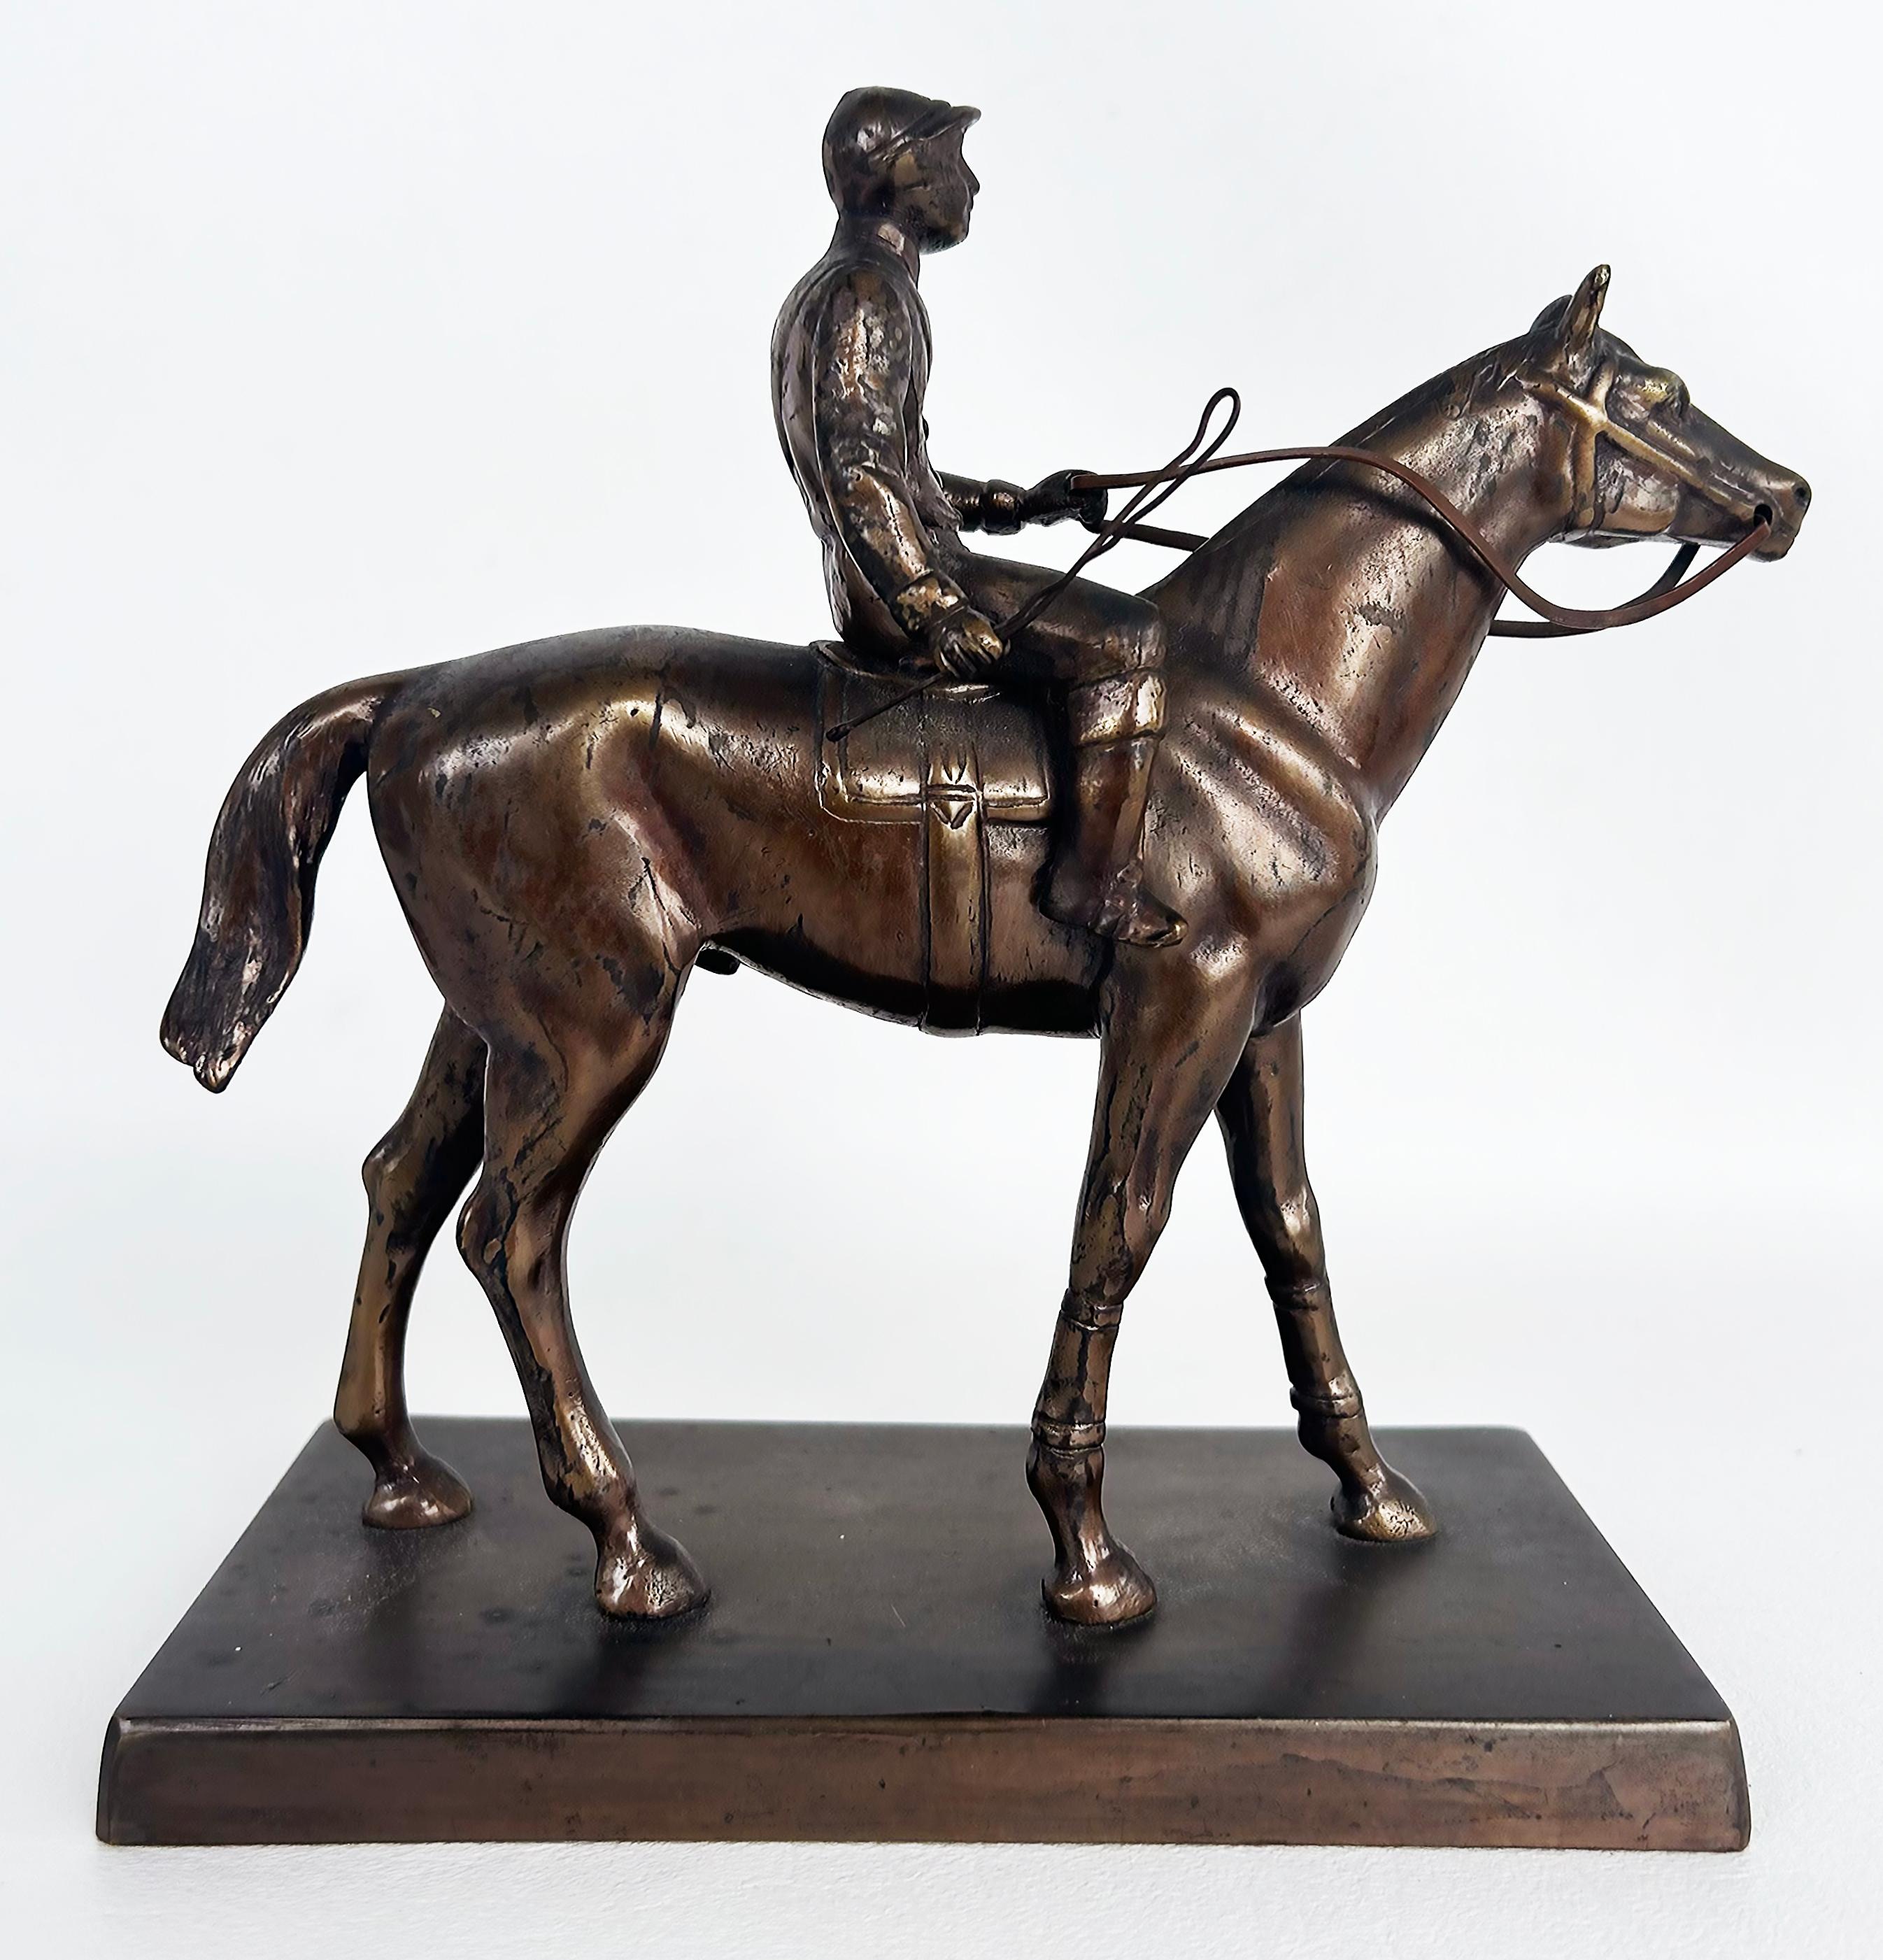 Bronze équestre Figurative Racehorse and Jockey Sculpture Statue

Nous proposons à la vente une sculpture équestre figurative en bronze représentant un cheval pur-sang et son jockey.  Il s'agit d'une sculpture du 20e siècle de bonne facture, mais